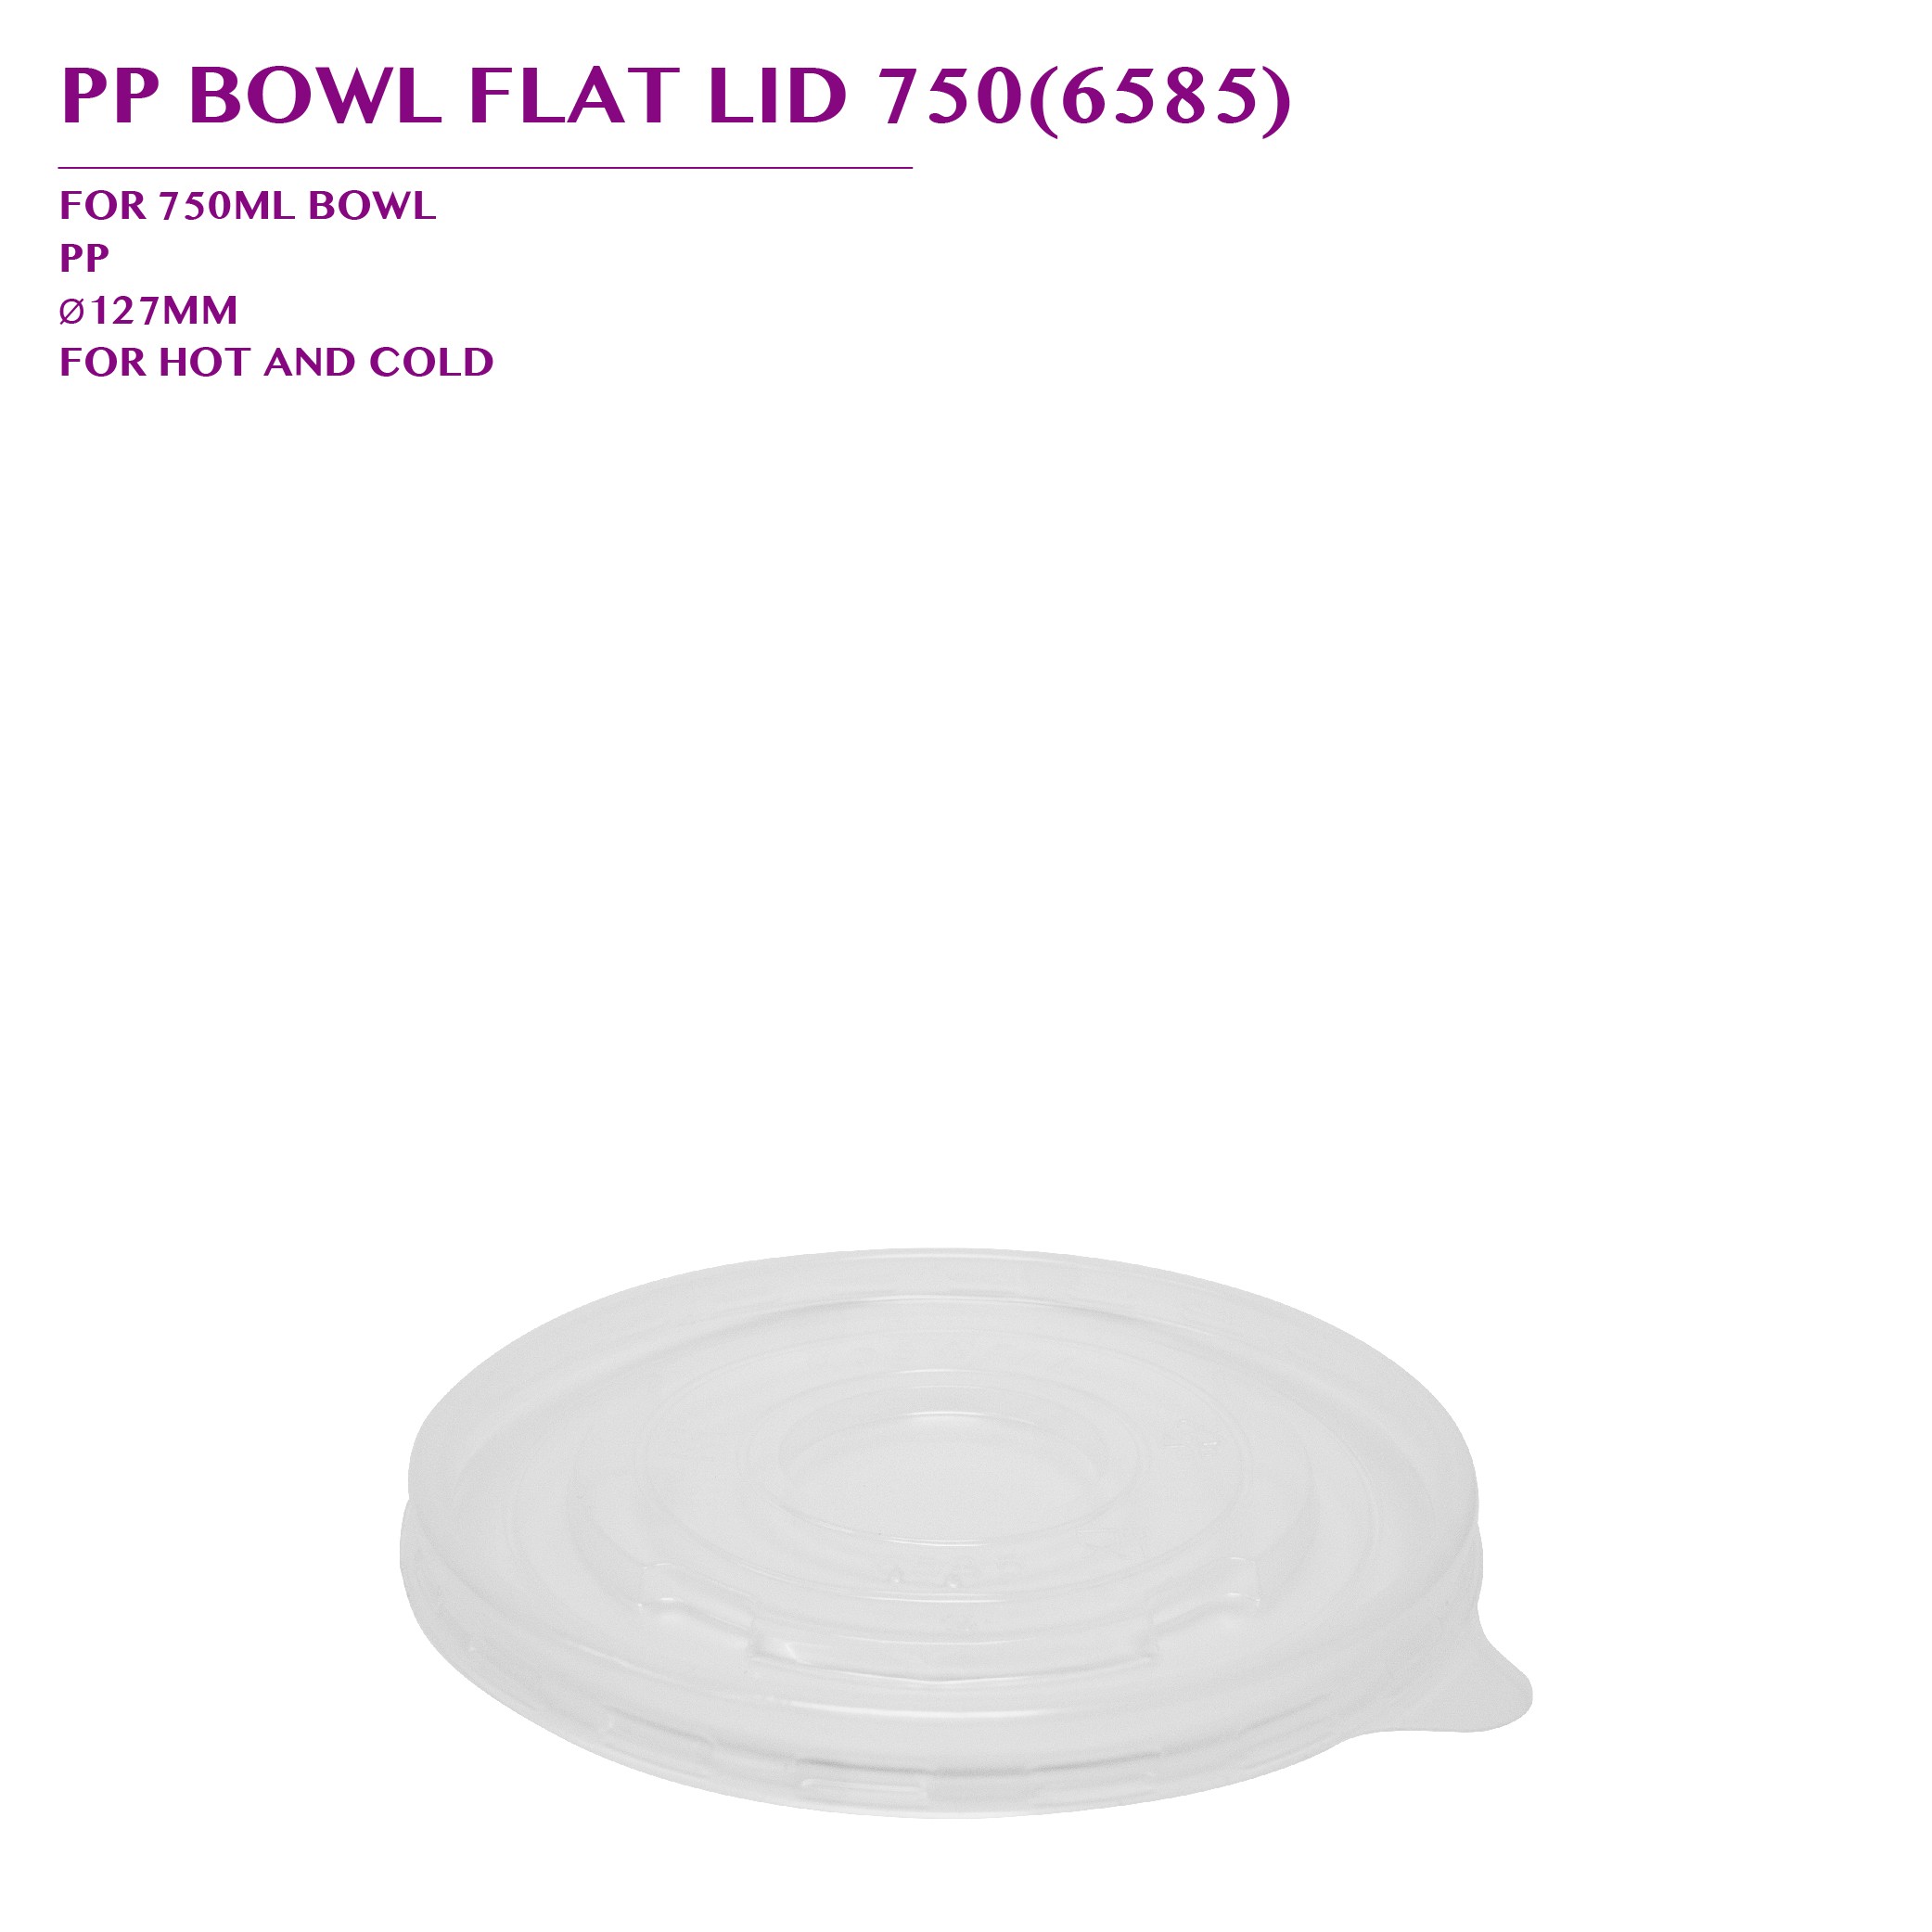 PRE-ORDER PP BOWL FLAT LID 750(6585) 600PCS/CTN